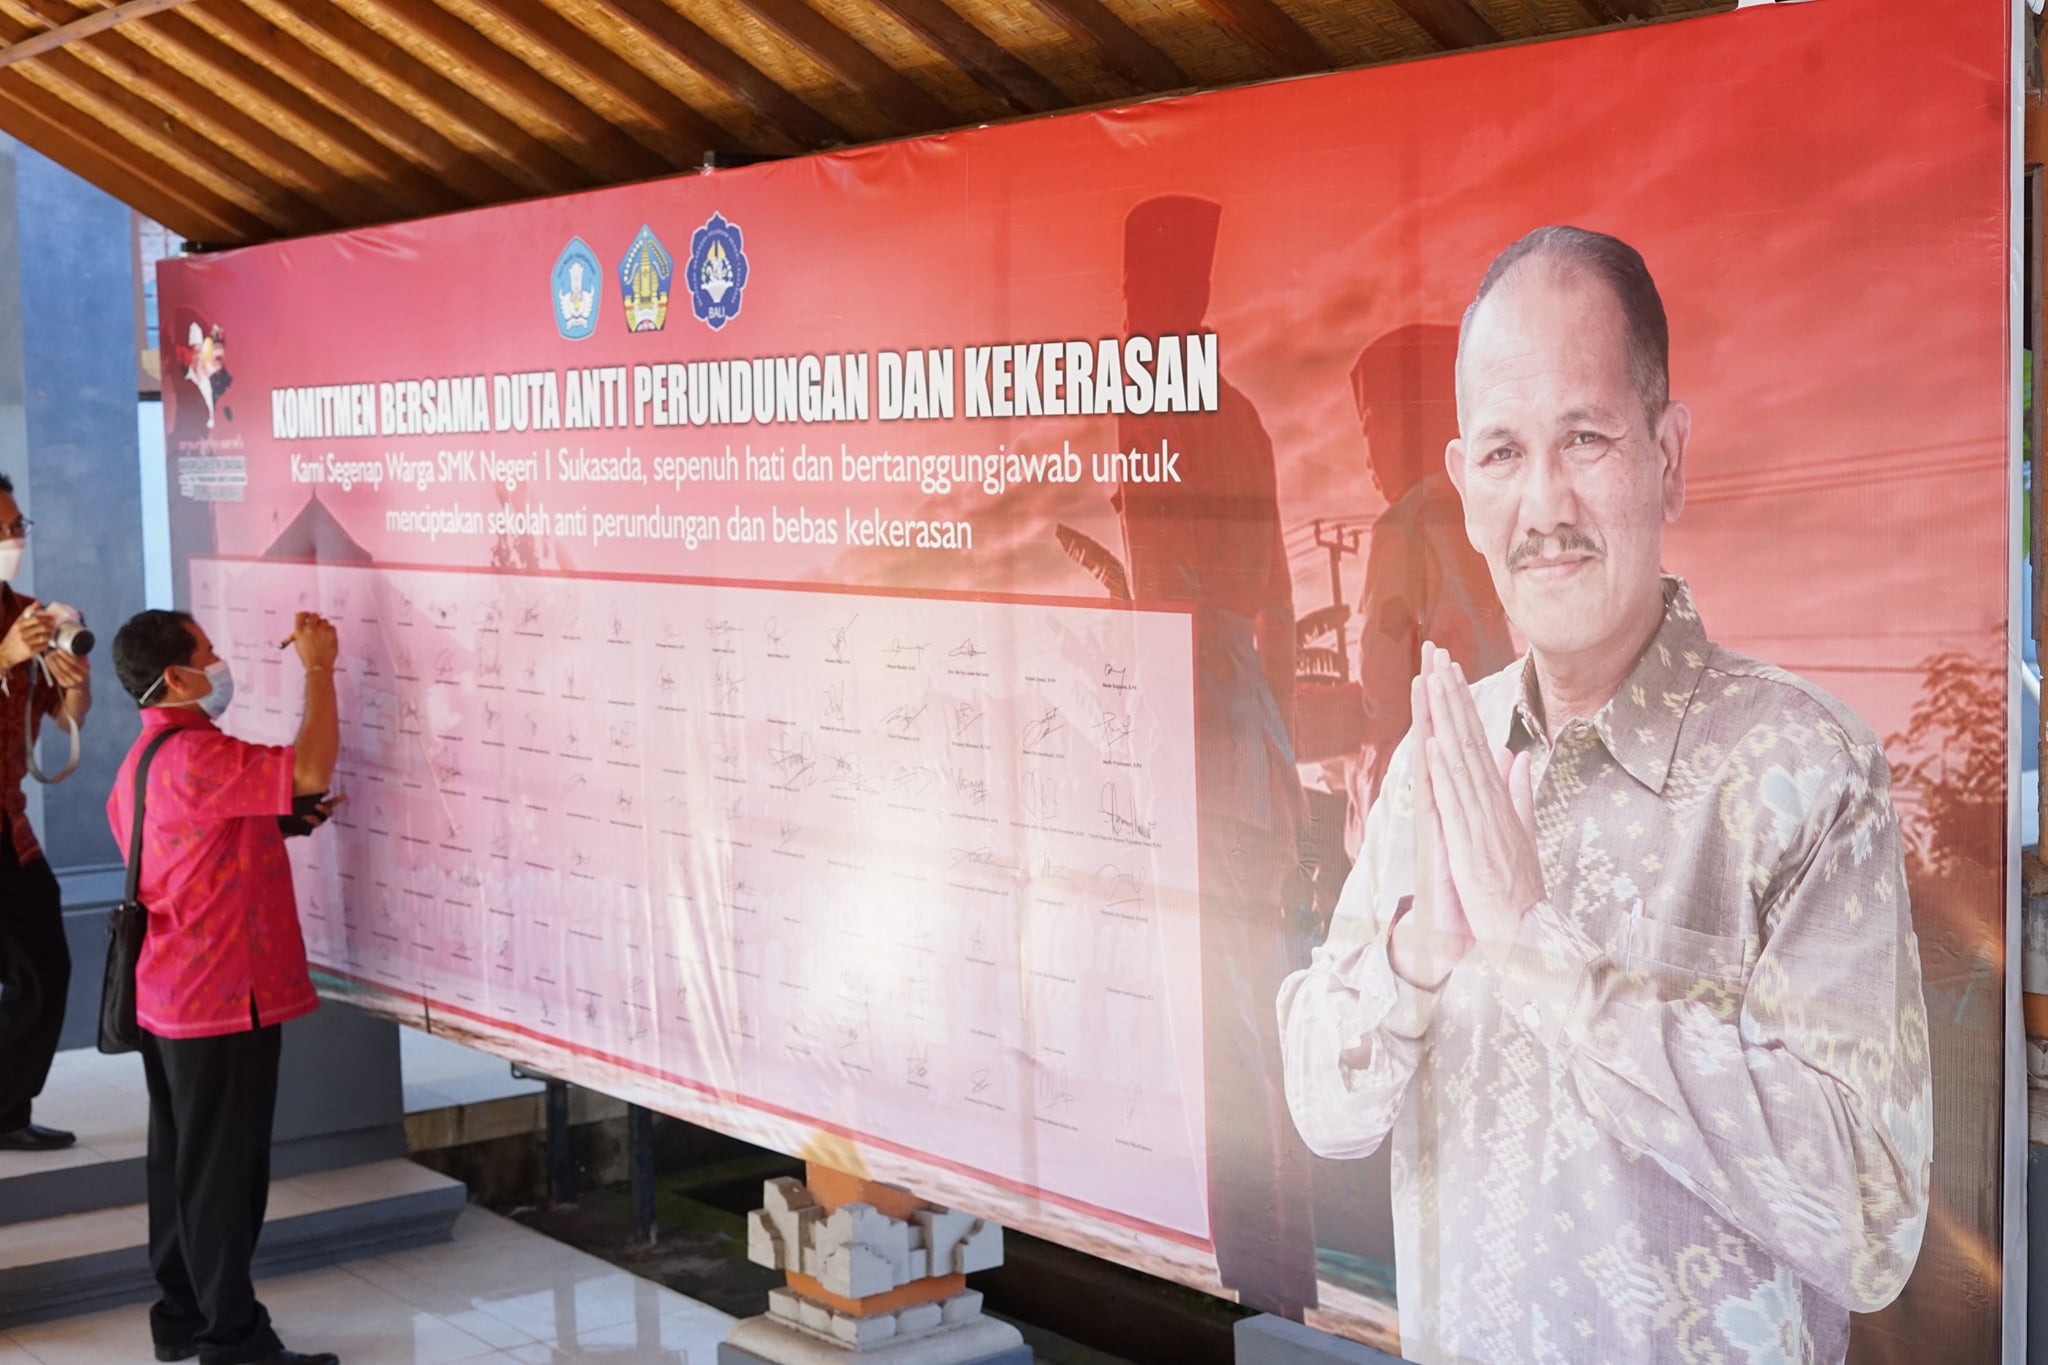 Penandatanganan Komitmen Bersama Duta Anti Perundungan dan Kekerasan oleh Seluruh Warga SMK Negeri 1 Sukasada